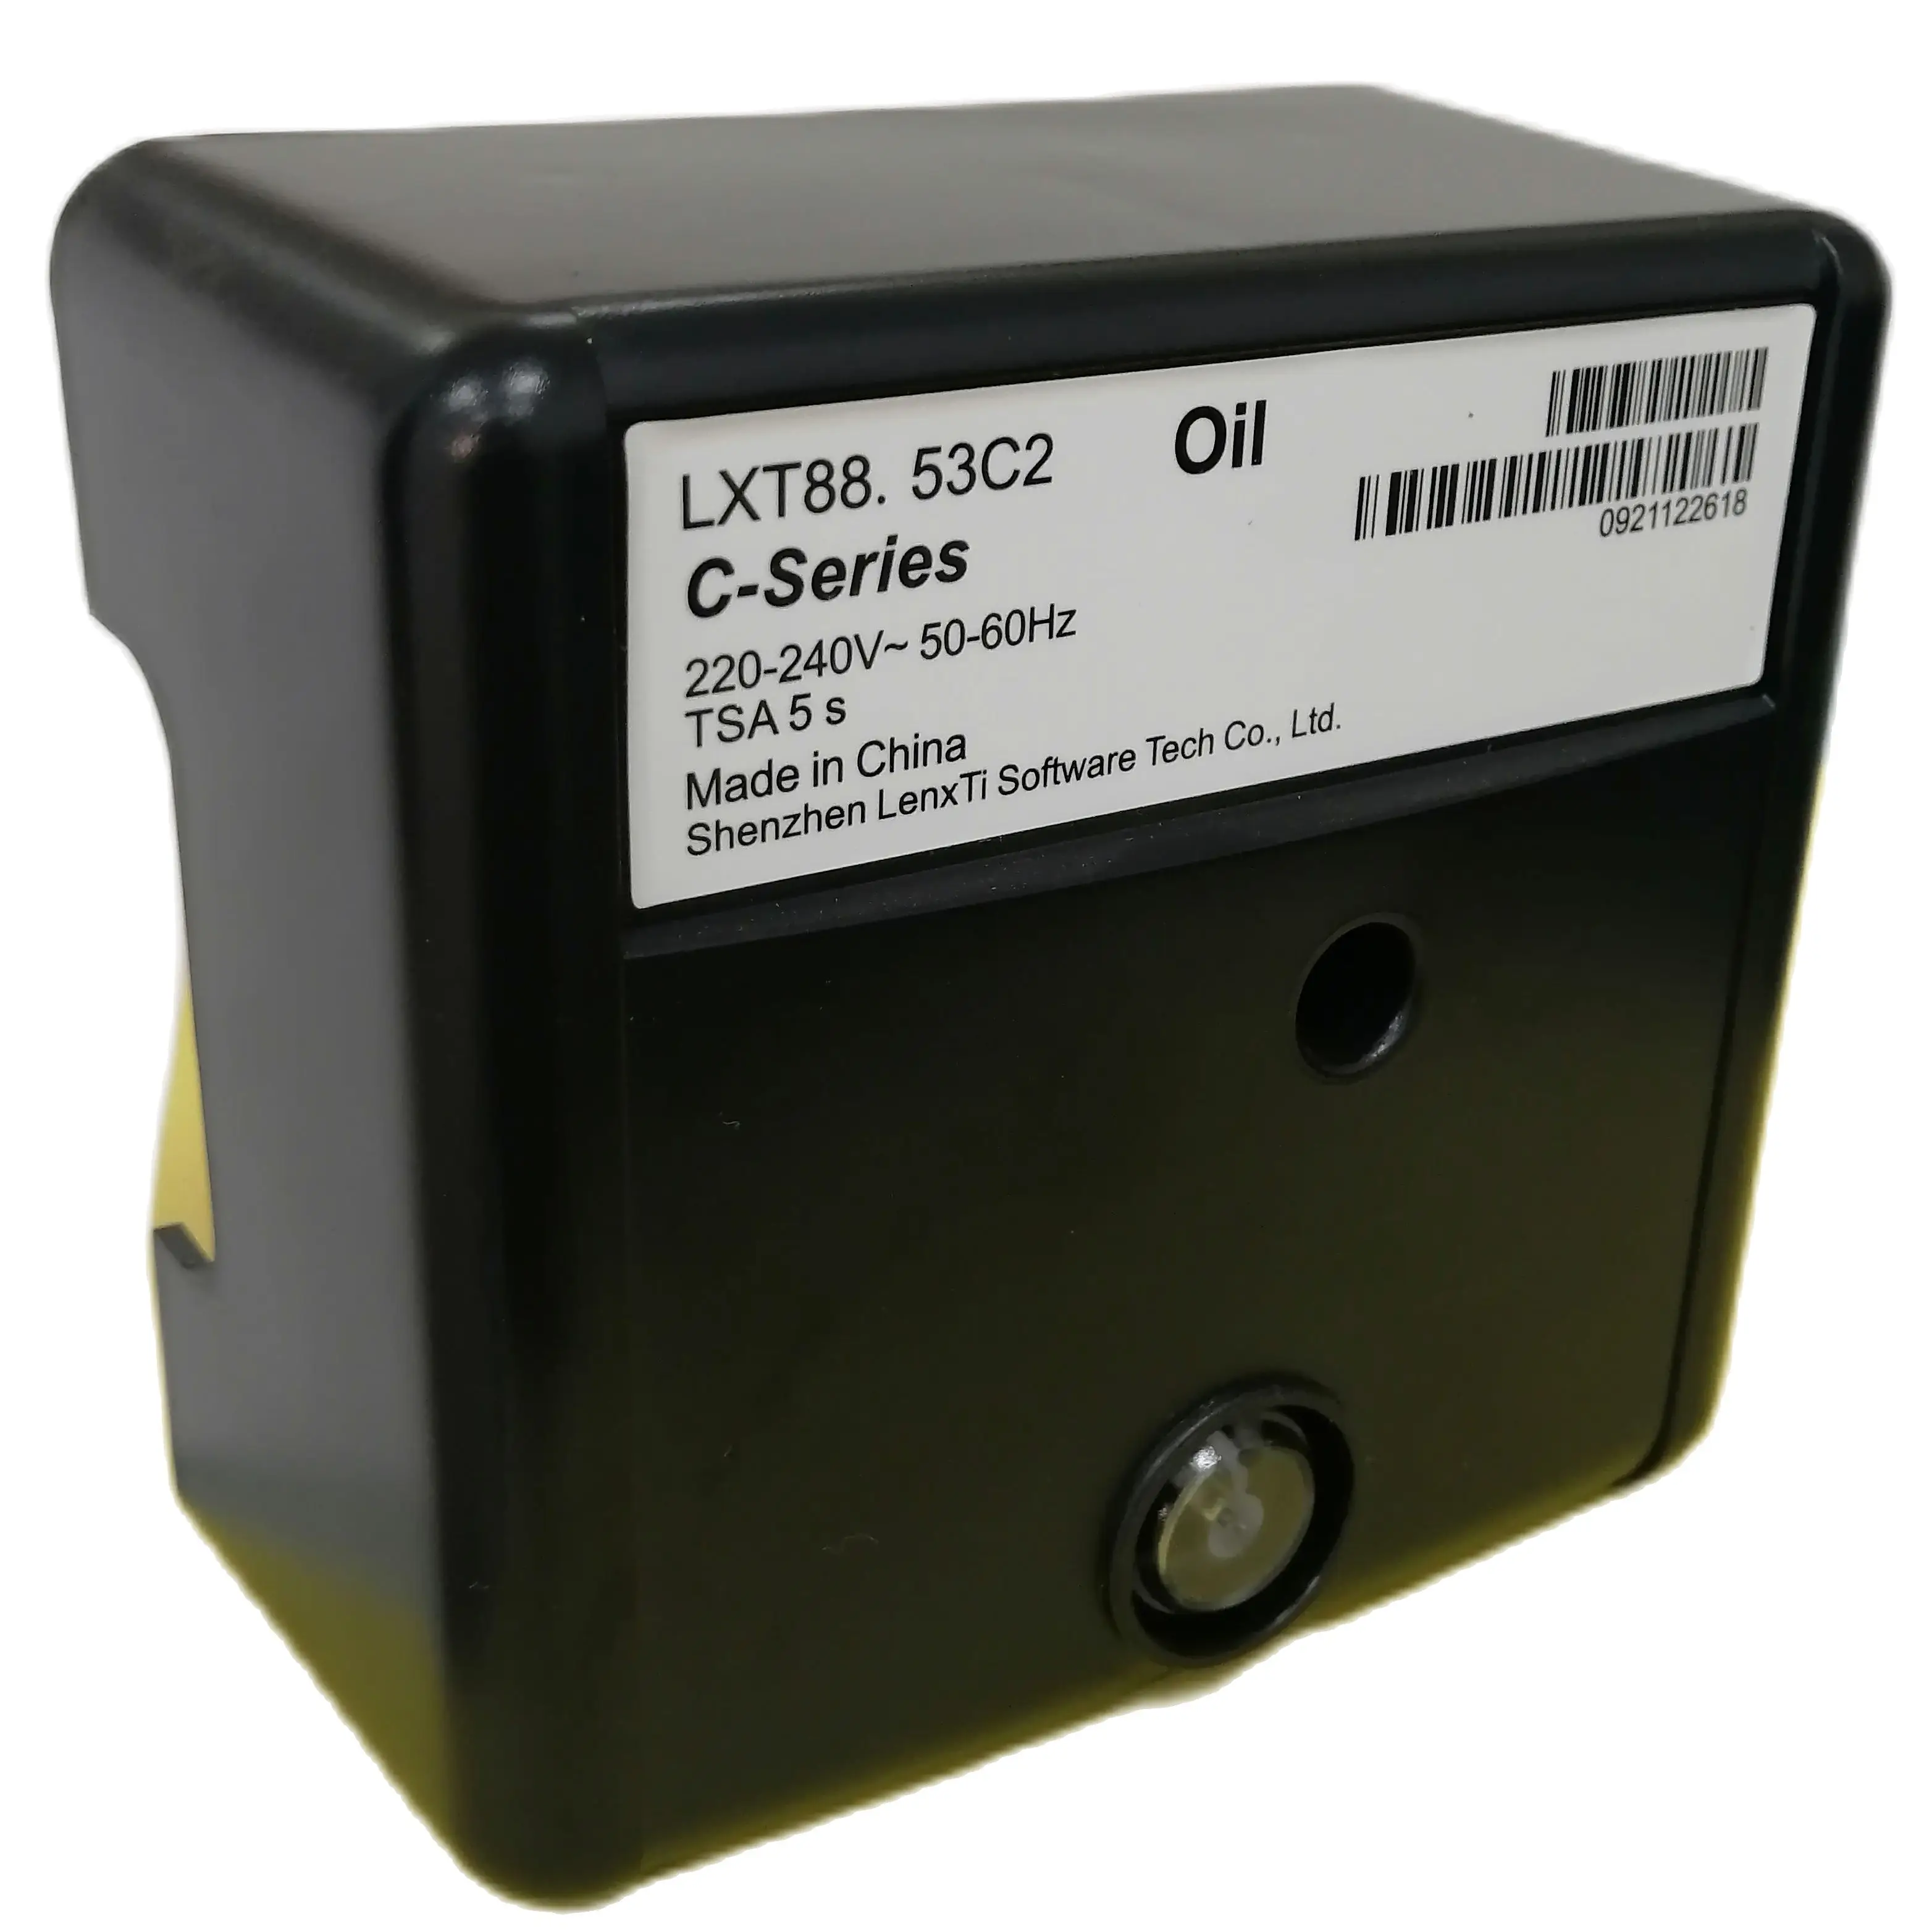 RMO88.53C2 |LenxTi| Burner Controls|LXT88.53C2 |LMO88.53C2RL Control Box For Riello Oil Burner Controller